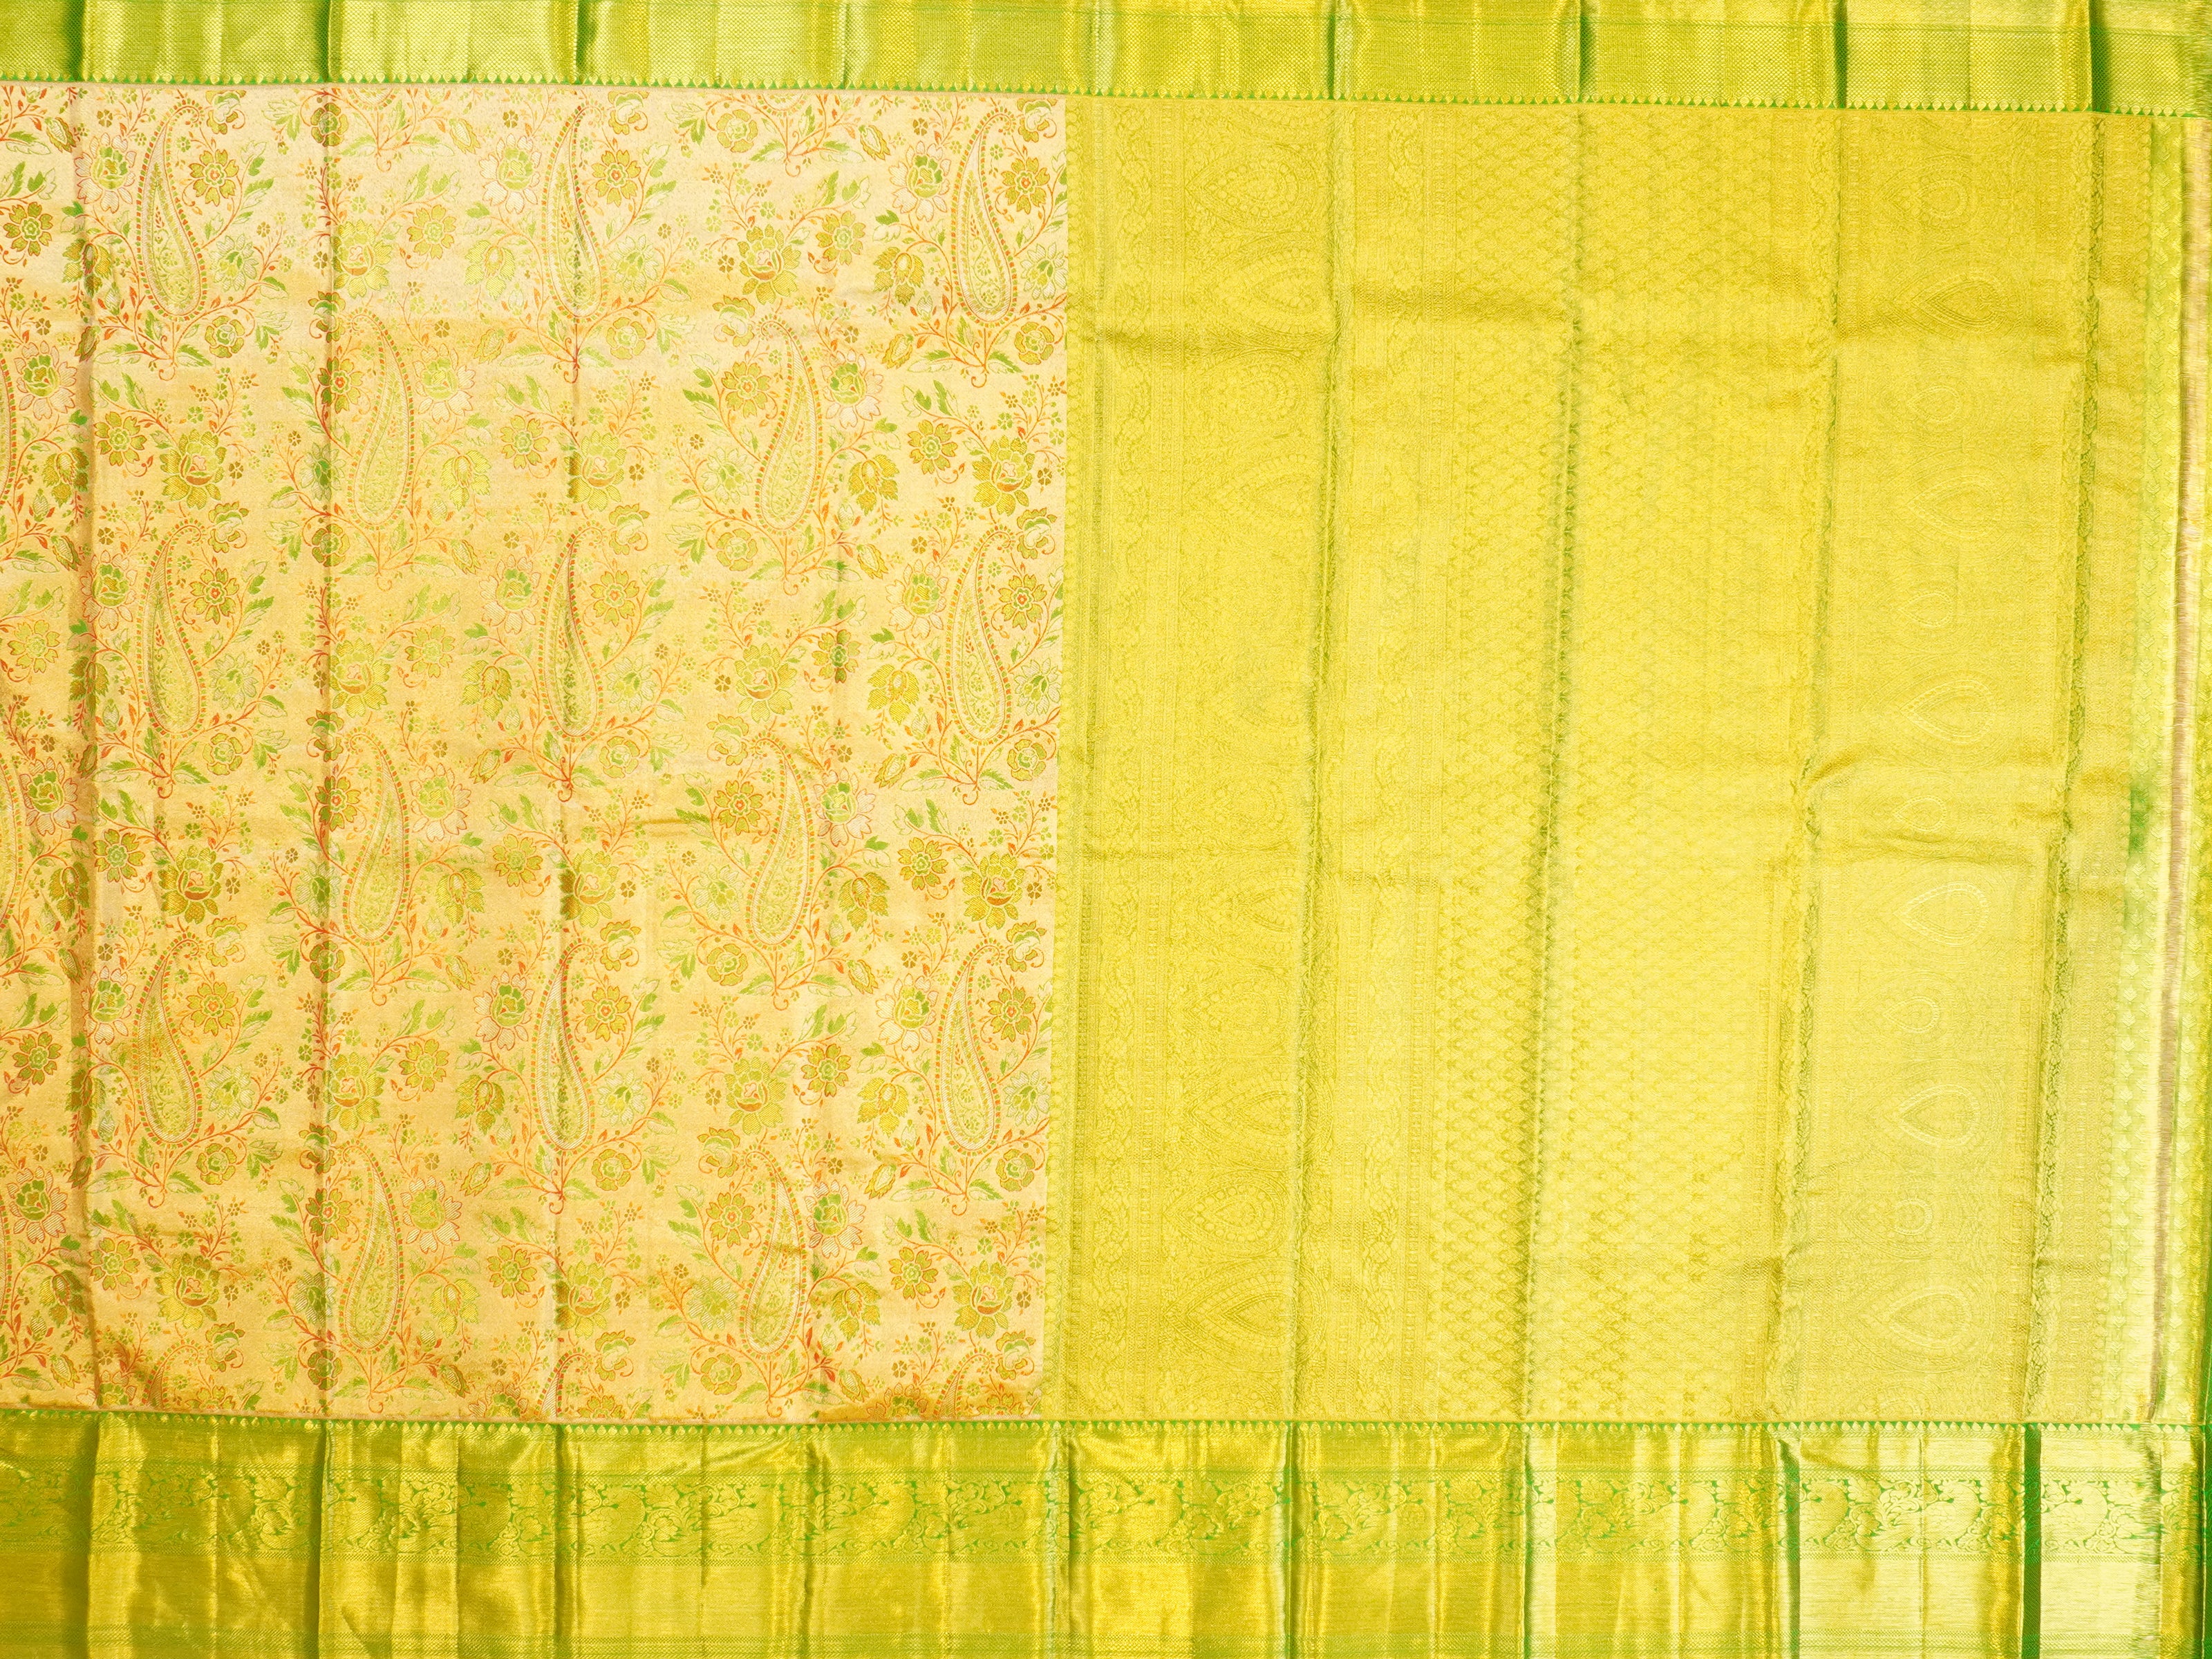 JSSB-04 | Maroon & Green Kanchi Tissue Pattu